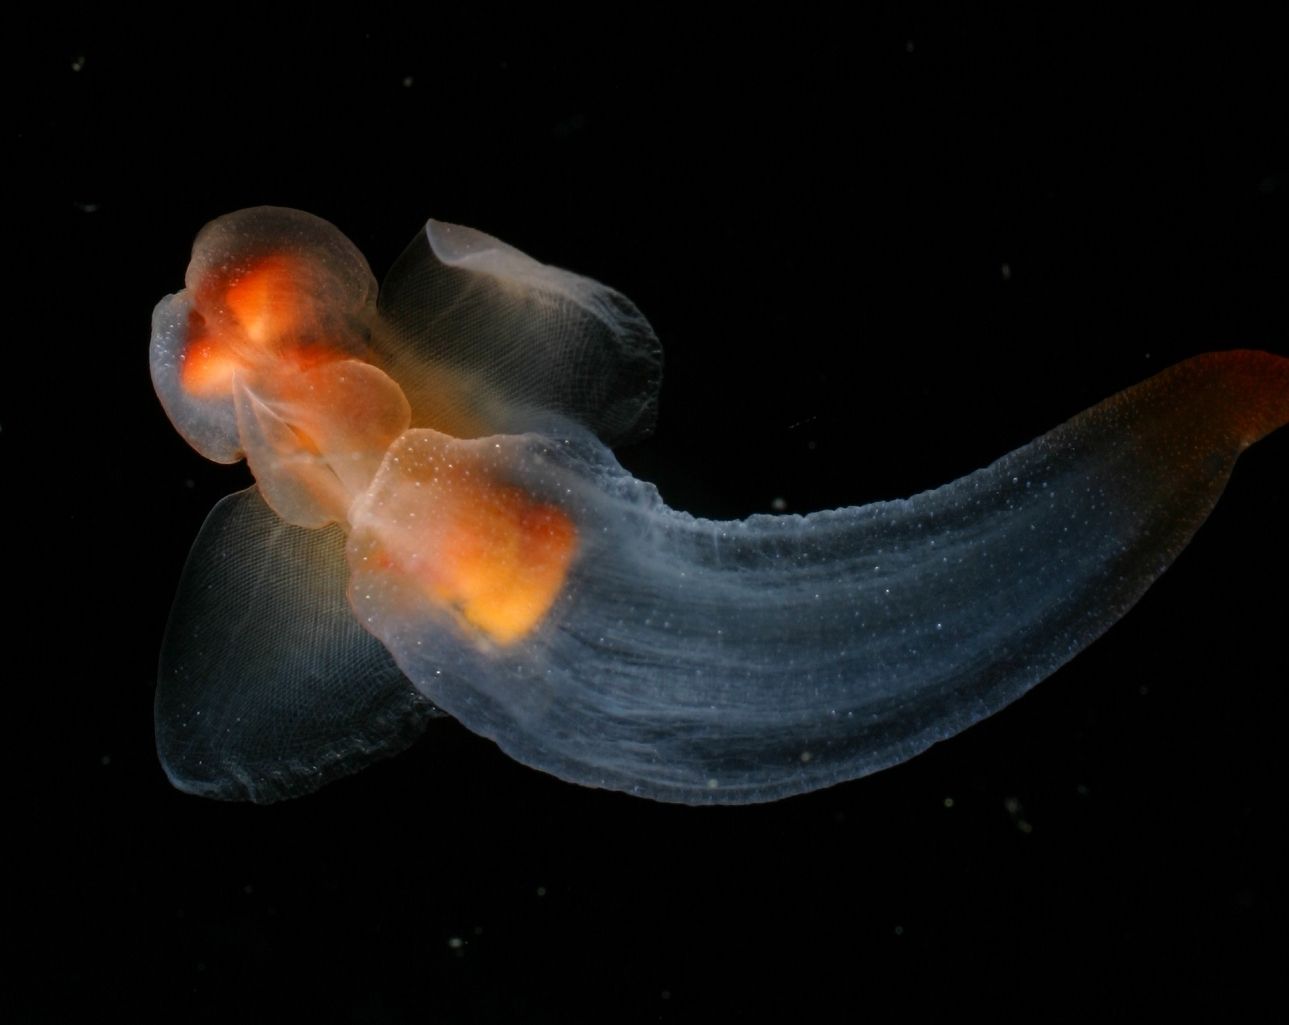 Clione Sea Snail